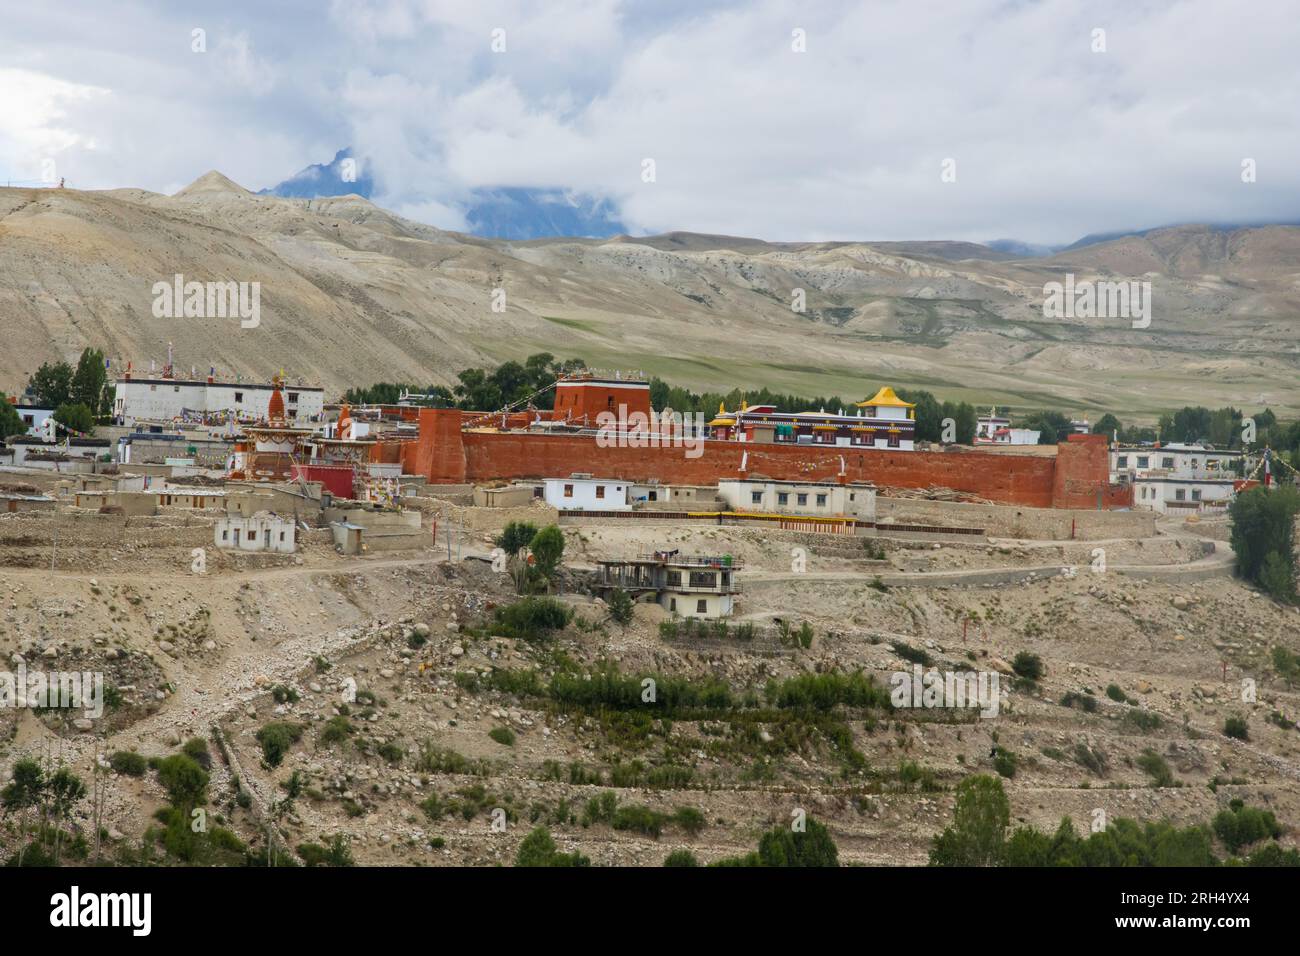 Das verbotene Königreich Lo Manthang mit Kloster, Palast und Dorf in Obermustang von Nepal. Stockfoto